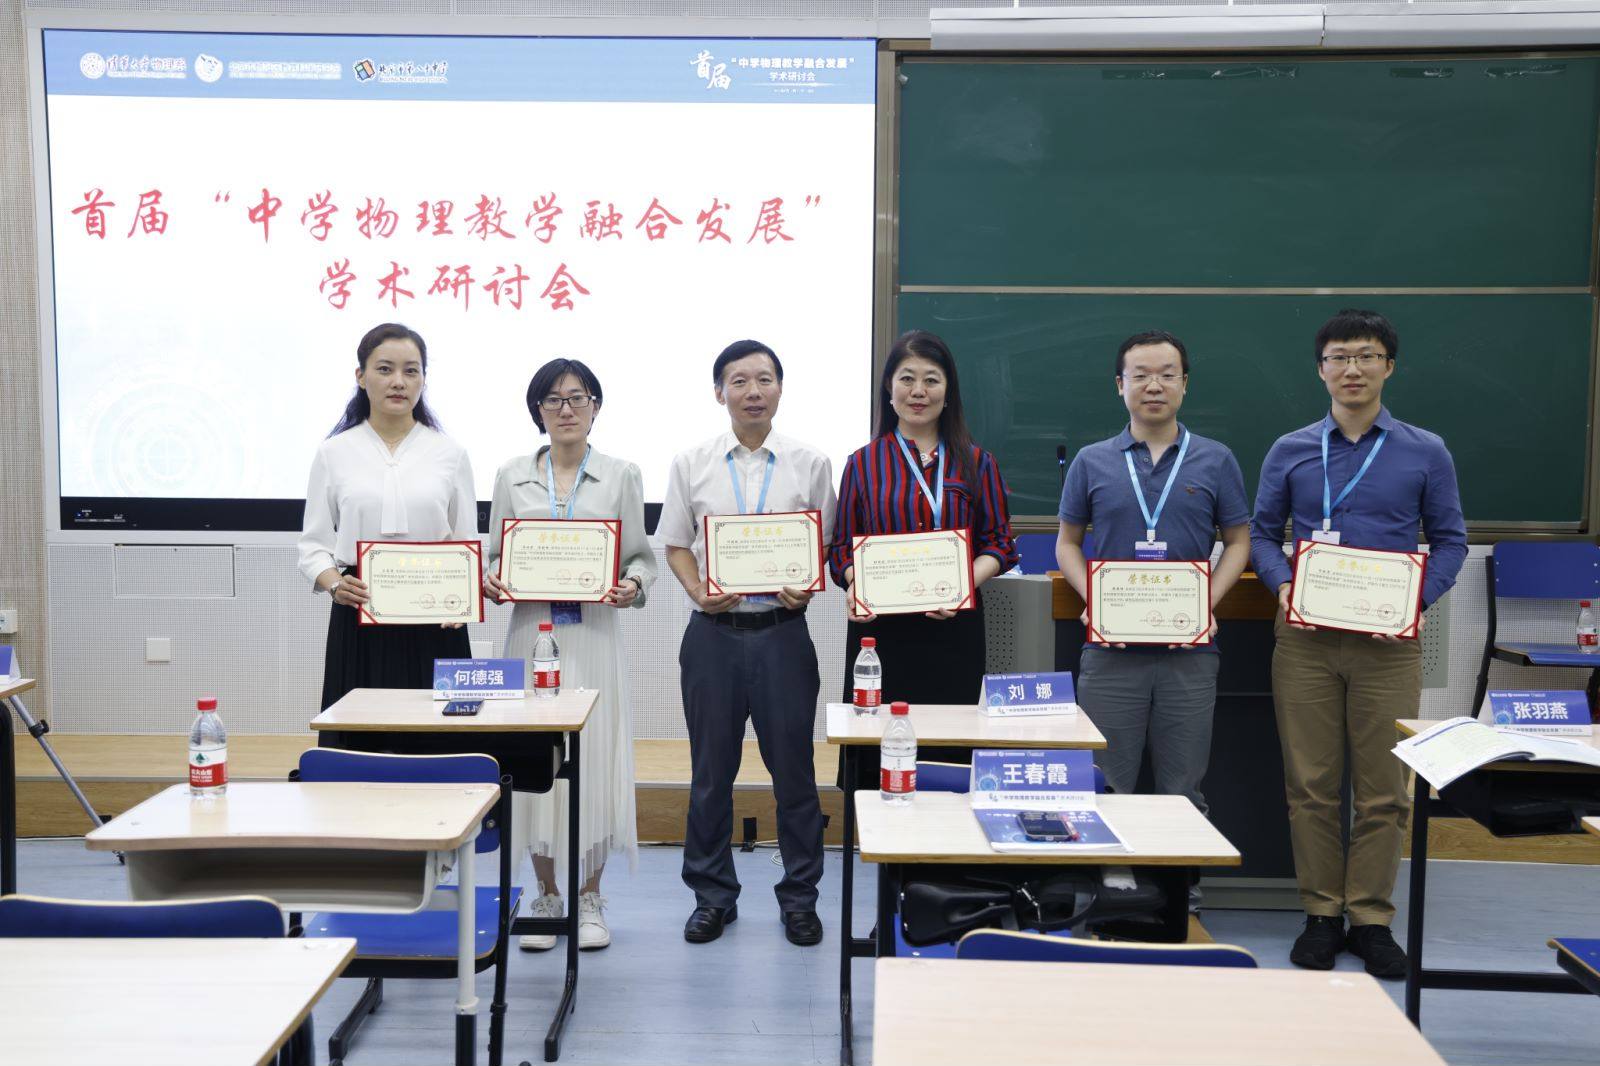 首届“中学物理教学融合发展”学术研讨会在京召开，原力教育数字化教学引热议